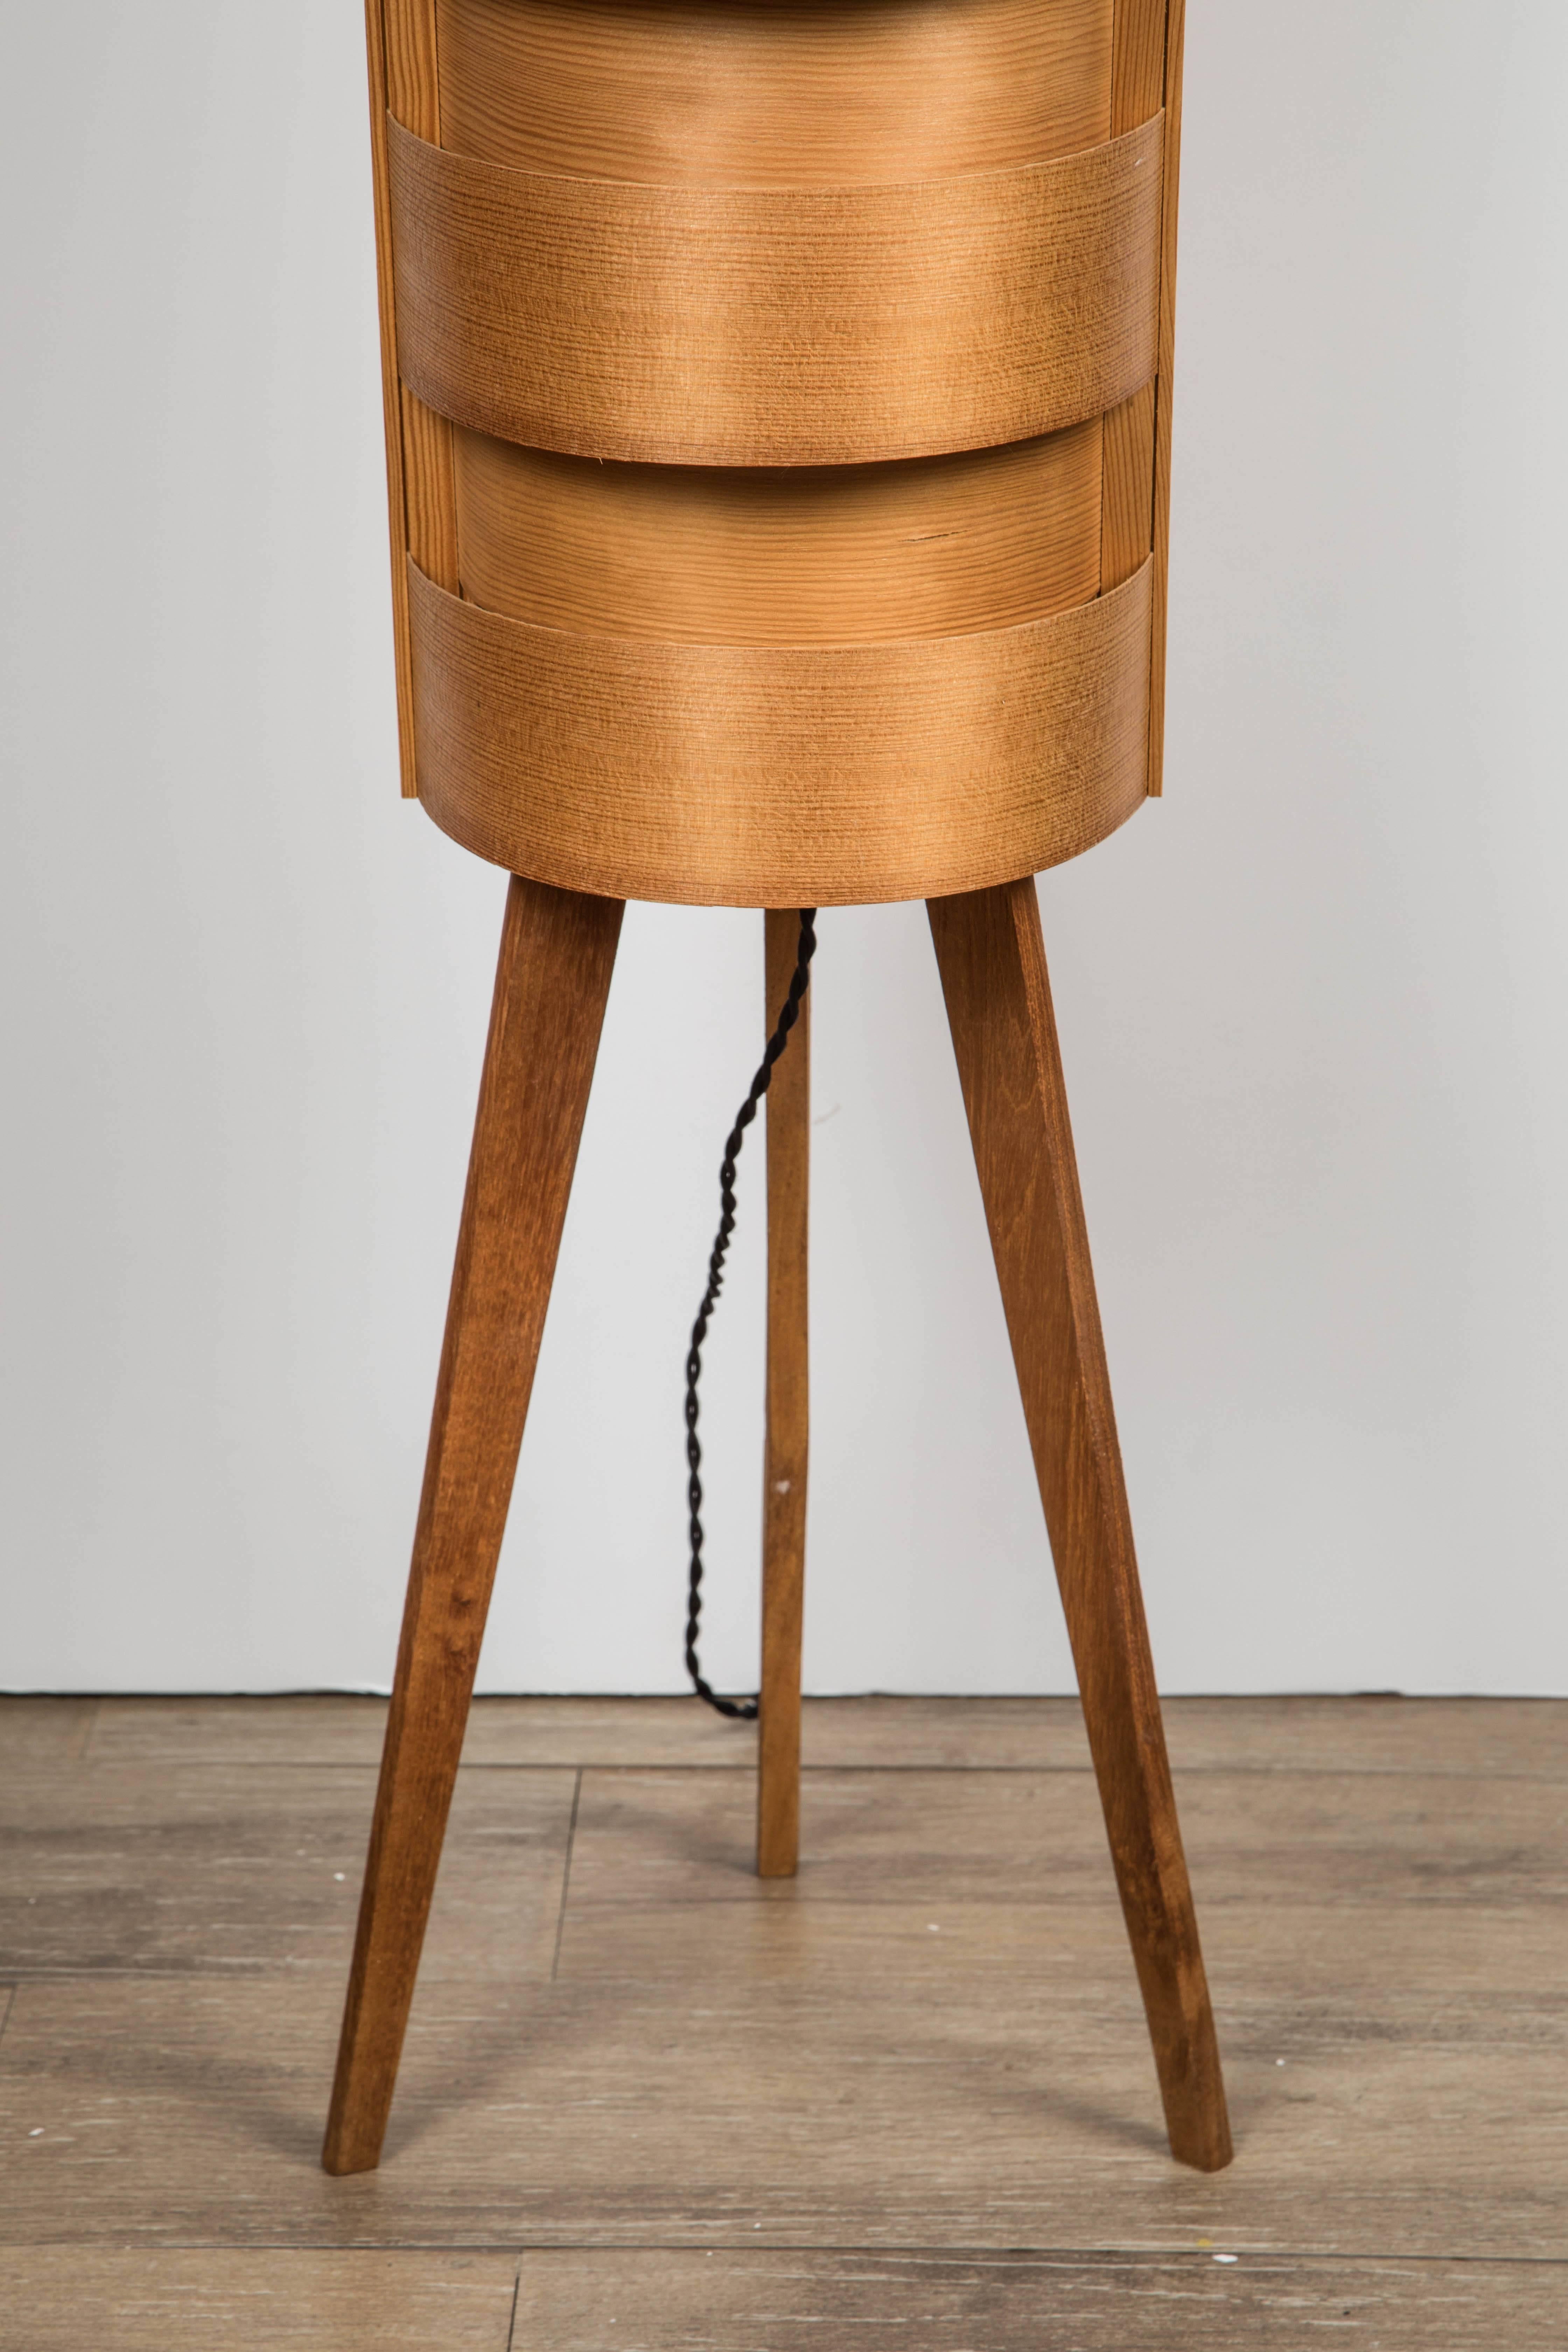 1960s Hans-Agne Jakobsson Wood Tripod Floor Lamp for AB Ellysett For Sale 2